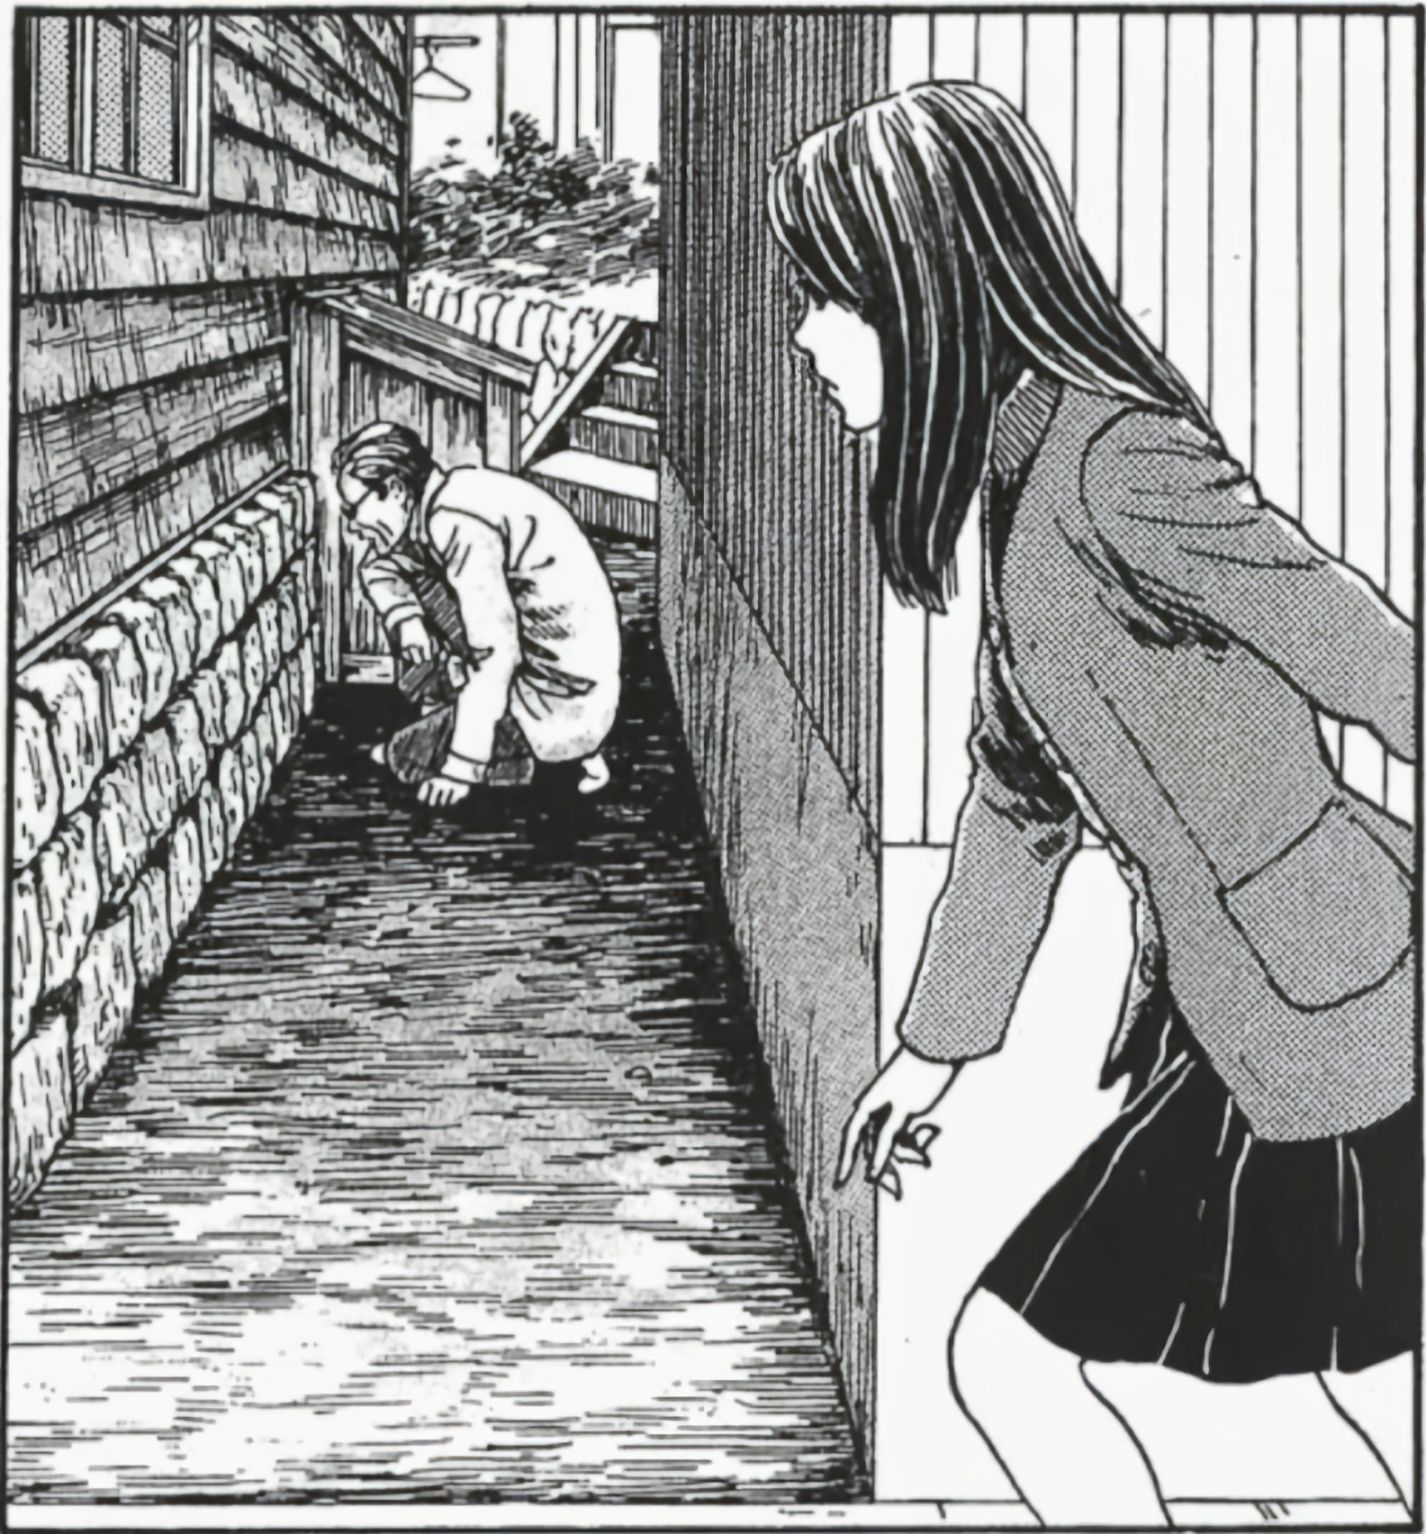 【影視動漫】伊藤潤二的恐怖漫畫《漩渦》-第7張